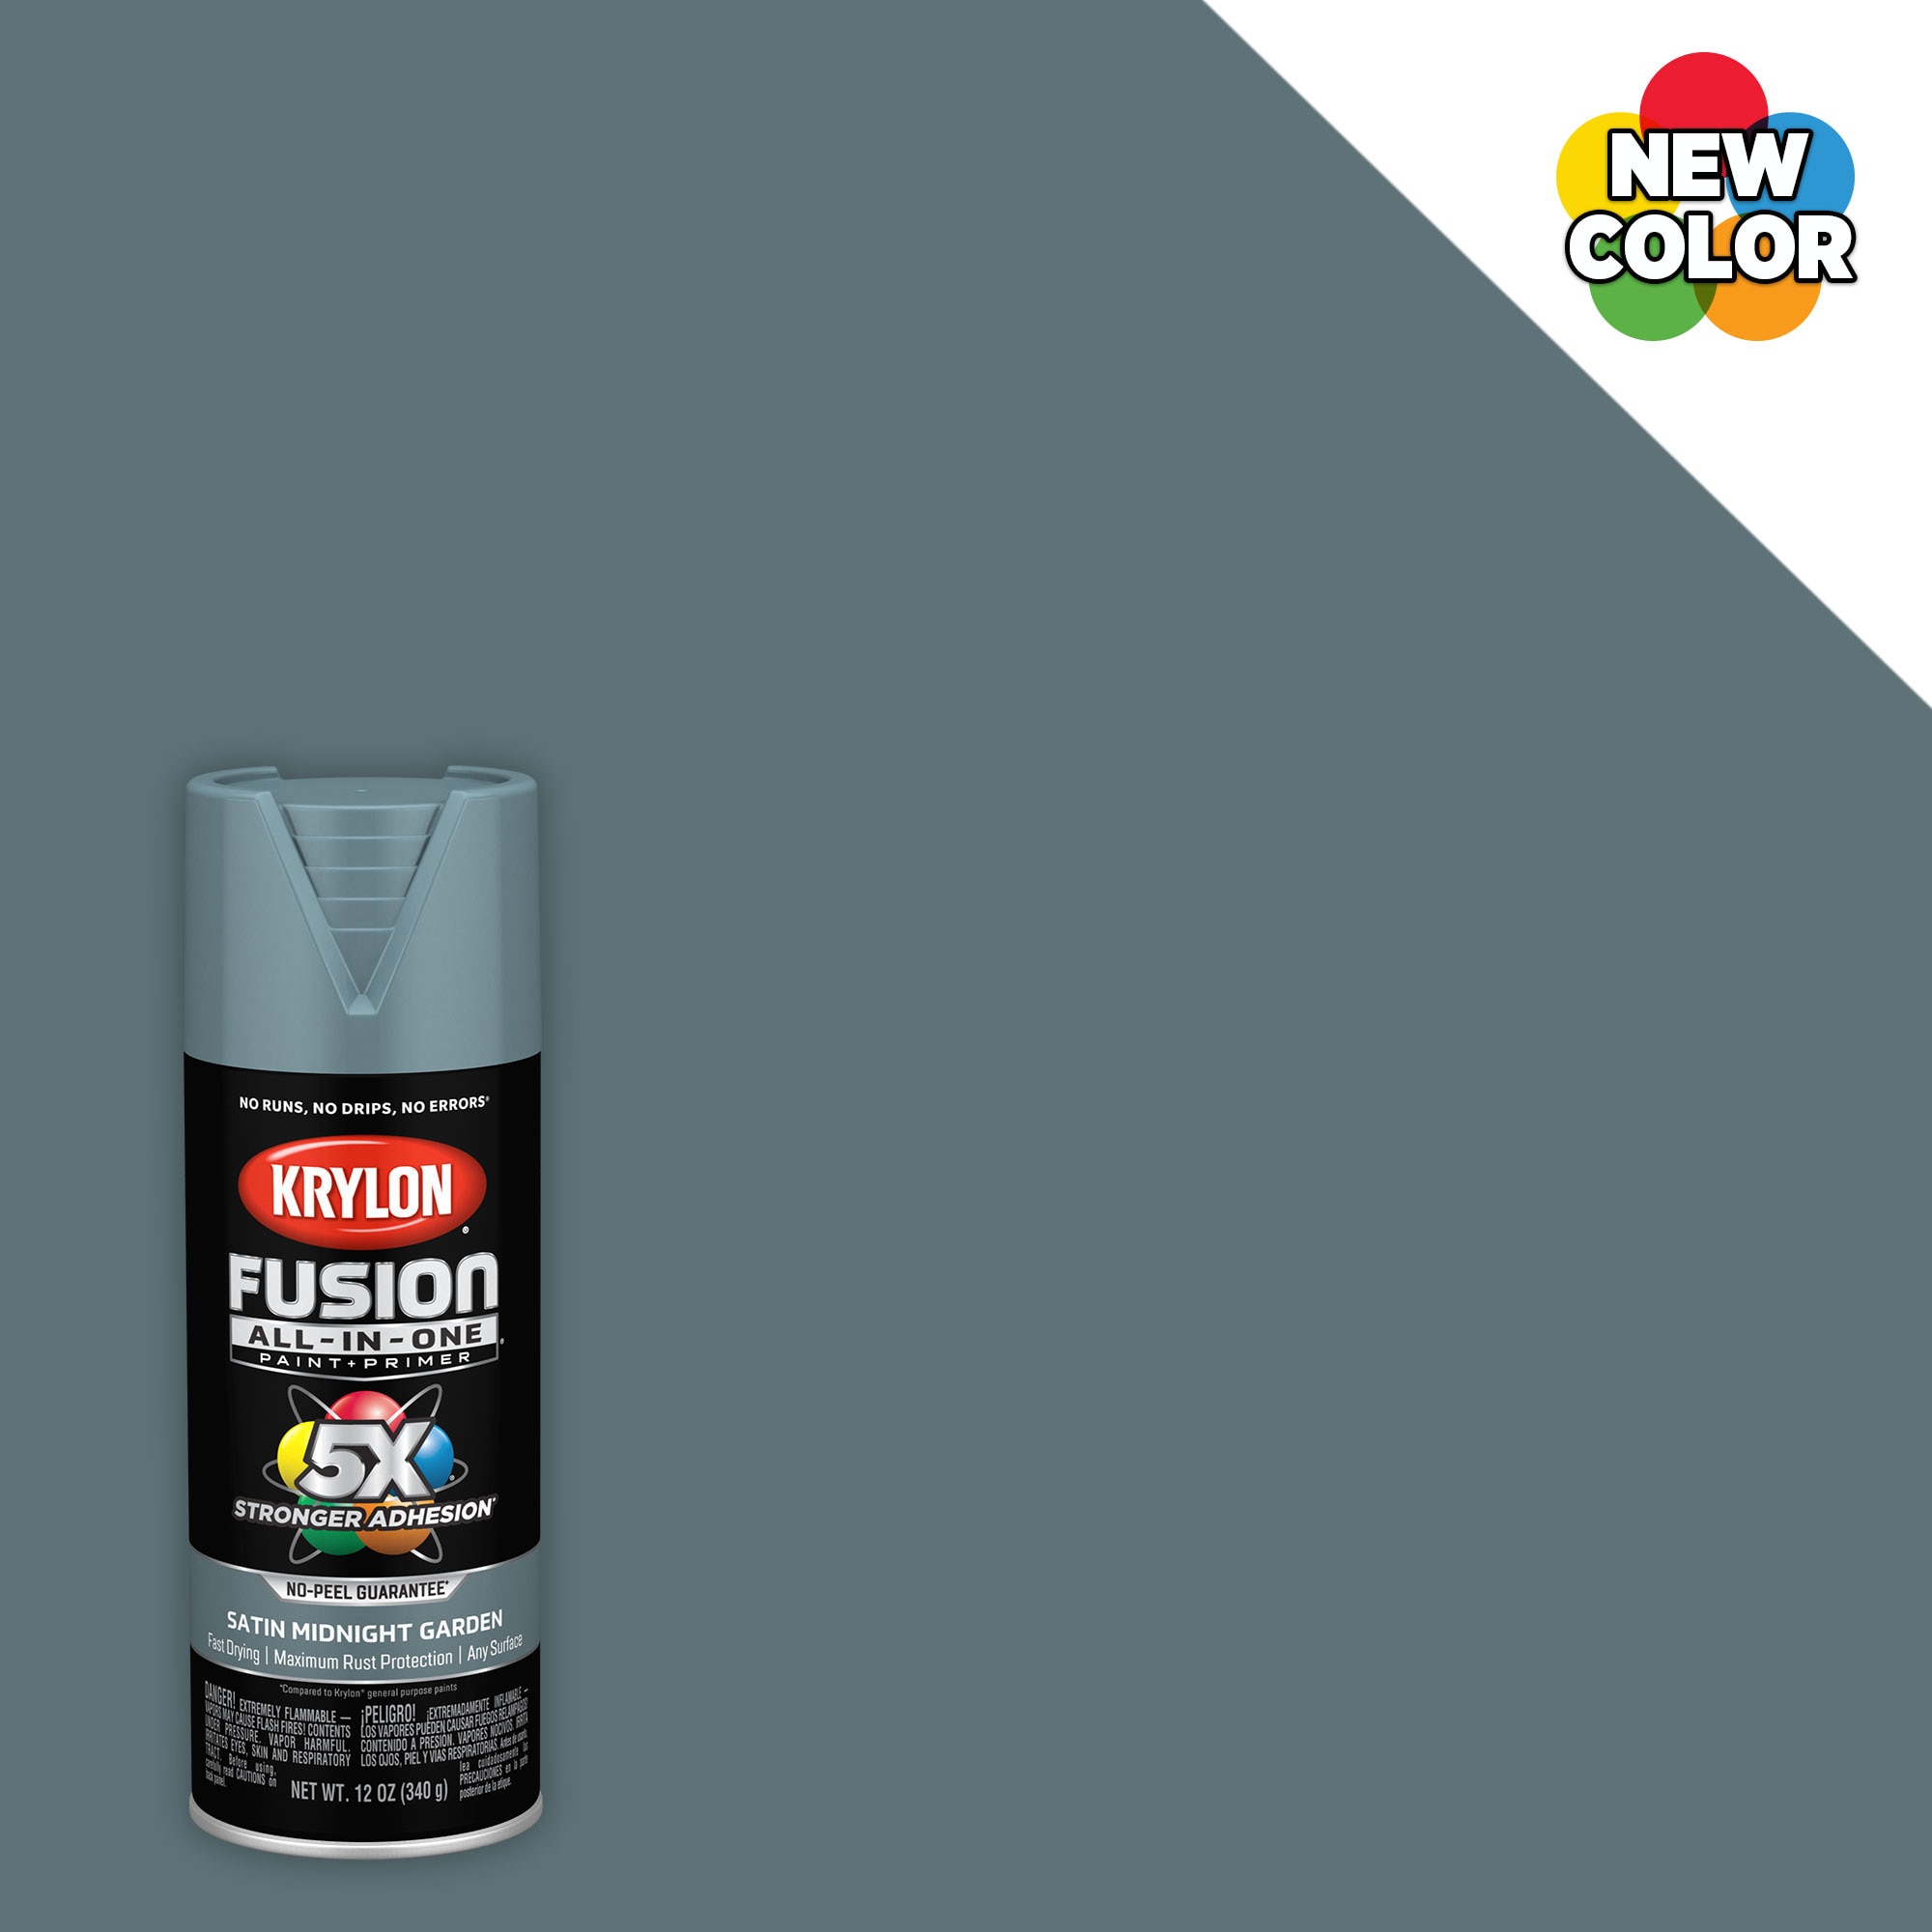 Krylon Acrylic Enamel Specialty Flat Primer Spray Primer - White K02399007 - 12 oz